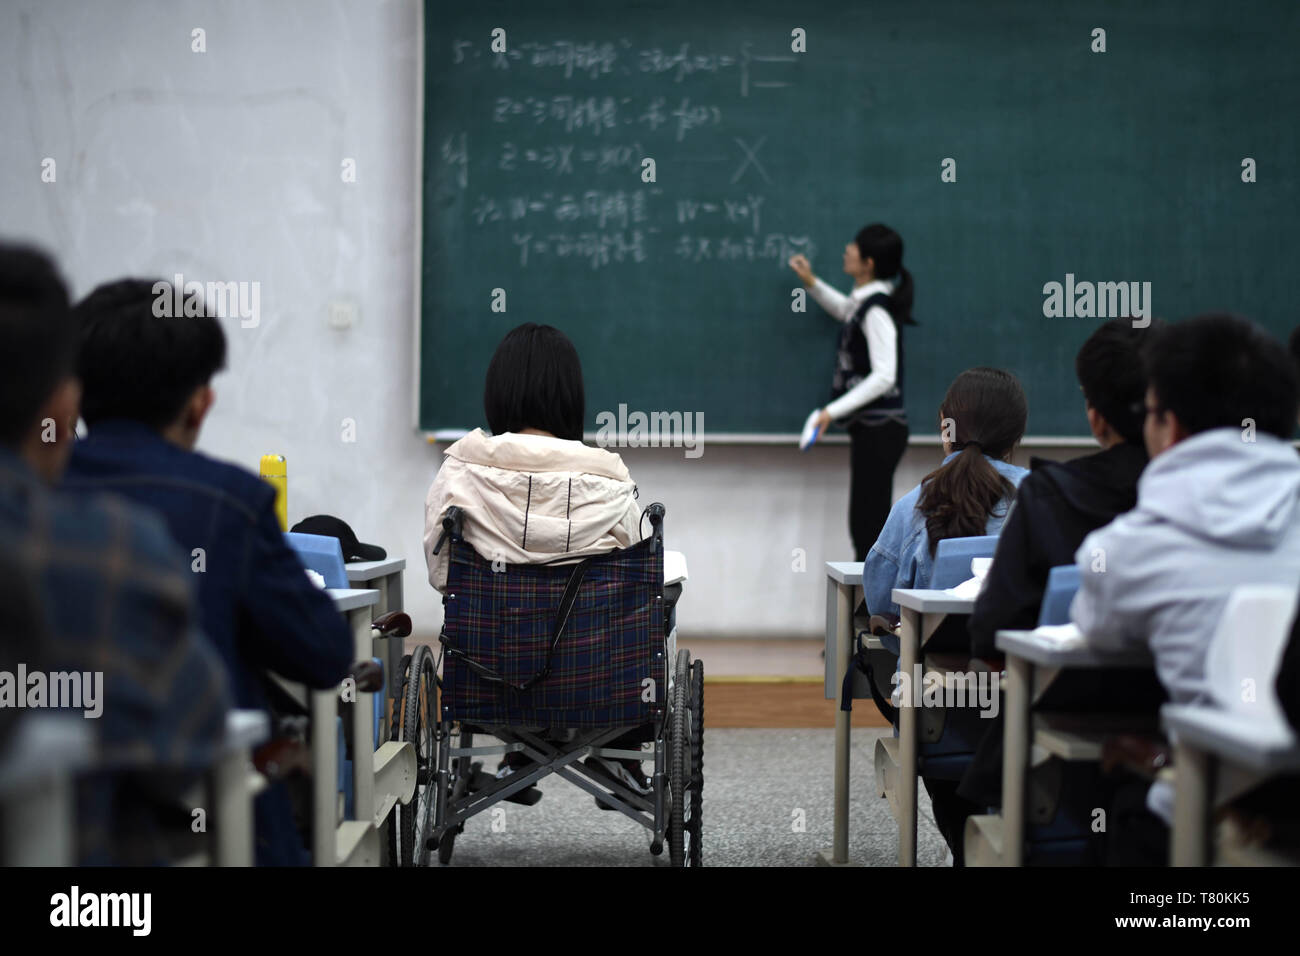 (190510) - HARBIN, 10. Mai 2019 (Xinhua) - Zhao Tingting besucht Klasse im Rollstuhl in Harbin, im Nordosten der chinesischen Provinz Heilongjiang, am 9. Mai 2019. Zhao Tingting, ursprünglich aus dem Norden Chinas Innere Mongolei Autonome Region, ist ein Neuling von Harbin Engineering University. Angeborene leiden Myasthenischem Syndrom (CMS, auch als Muskelschwäche bekannt), hat sie in einem Rollstuhl zu sitzen und viel mehr Aufwand als durchschnittliche Menschen. Nachdem bestimmt werden mit CMS, Qin nie gab ihr Traum, wollte sie in die Universität zu erhalten. Sie war dem Kollegium der Materialwissenschaften eine zugelassen Stockfoto